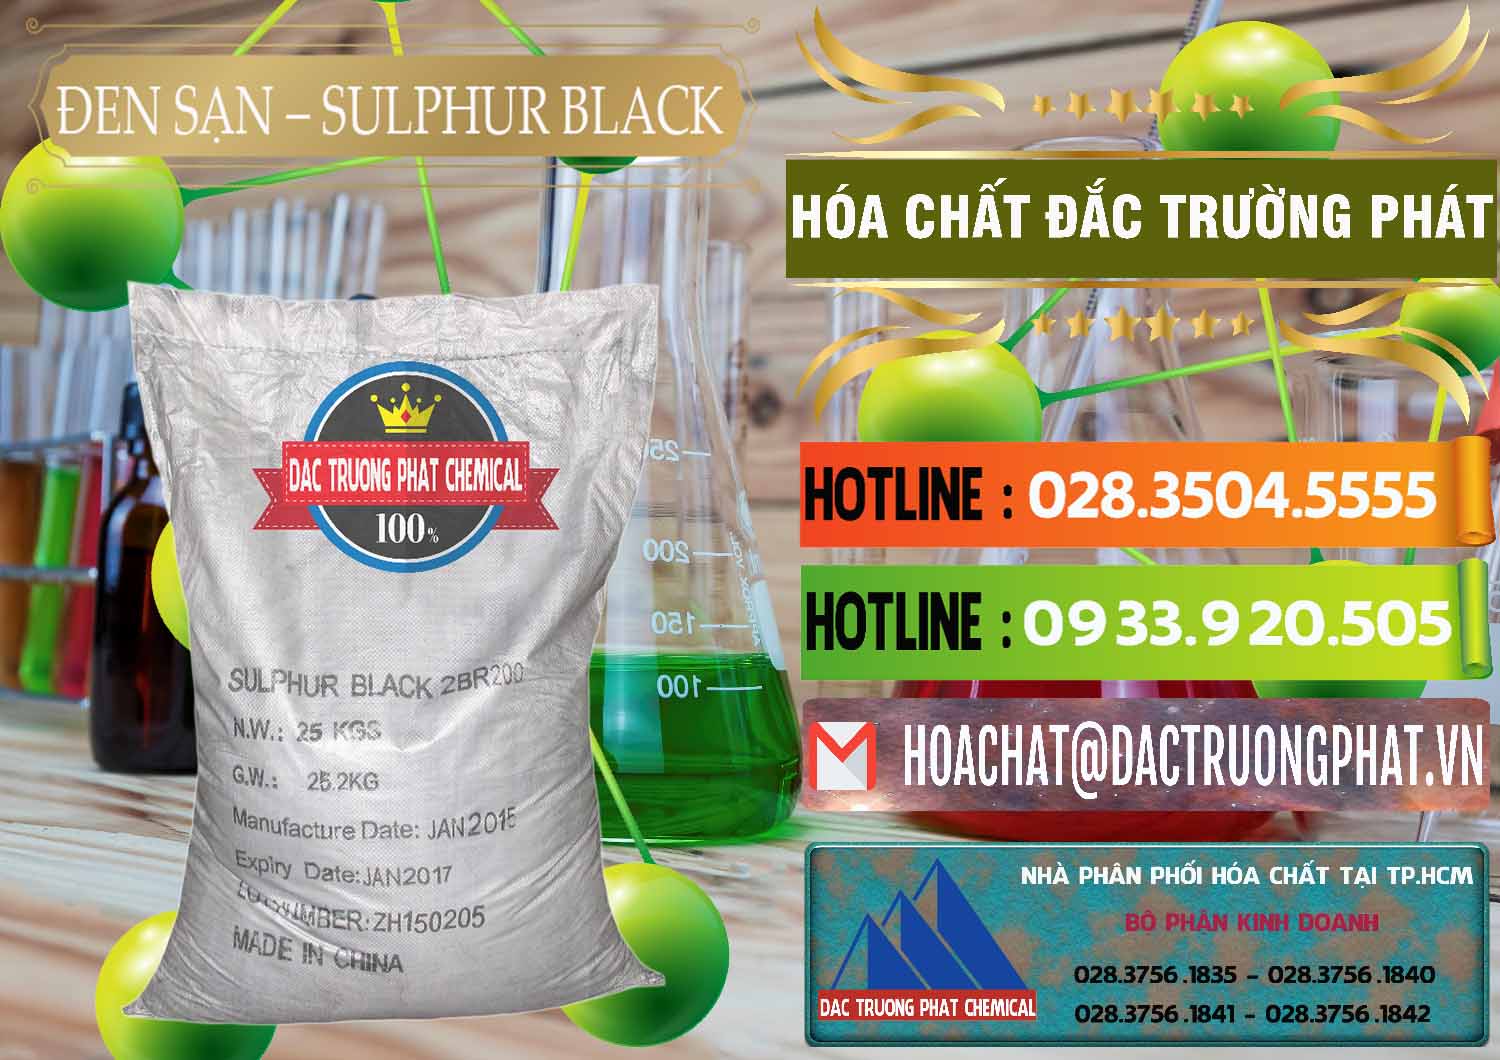 Công ty chuyên bán và cung cấp Đen Sạn – Sulphur Black Trung Quốc China - 0062 - Cty kinh doanh và cung cấp hóa chất tại TP.HCM - cungcaphoachat.com.vn